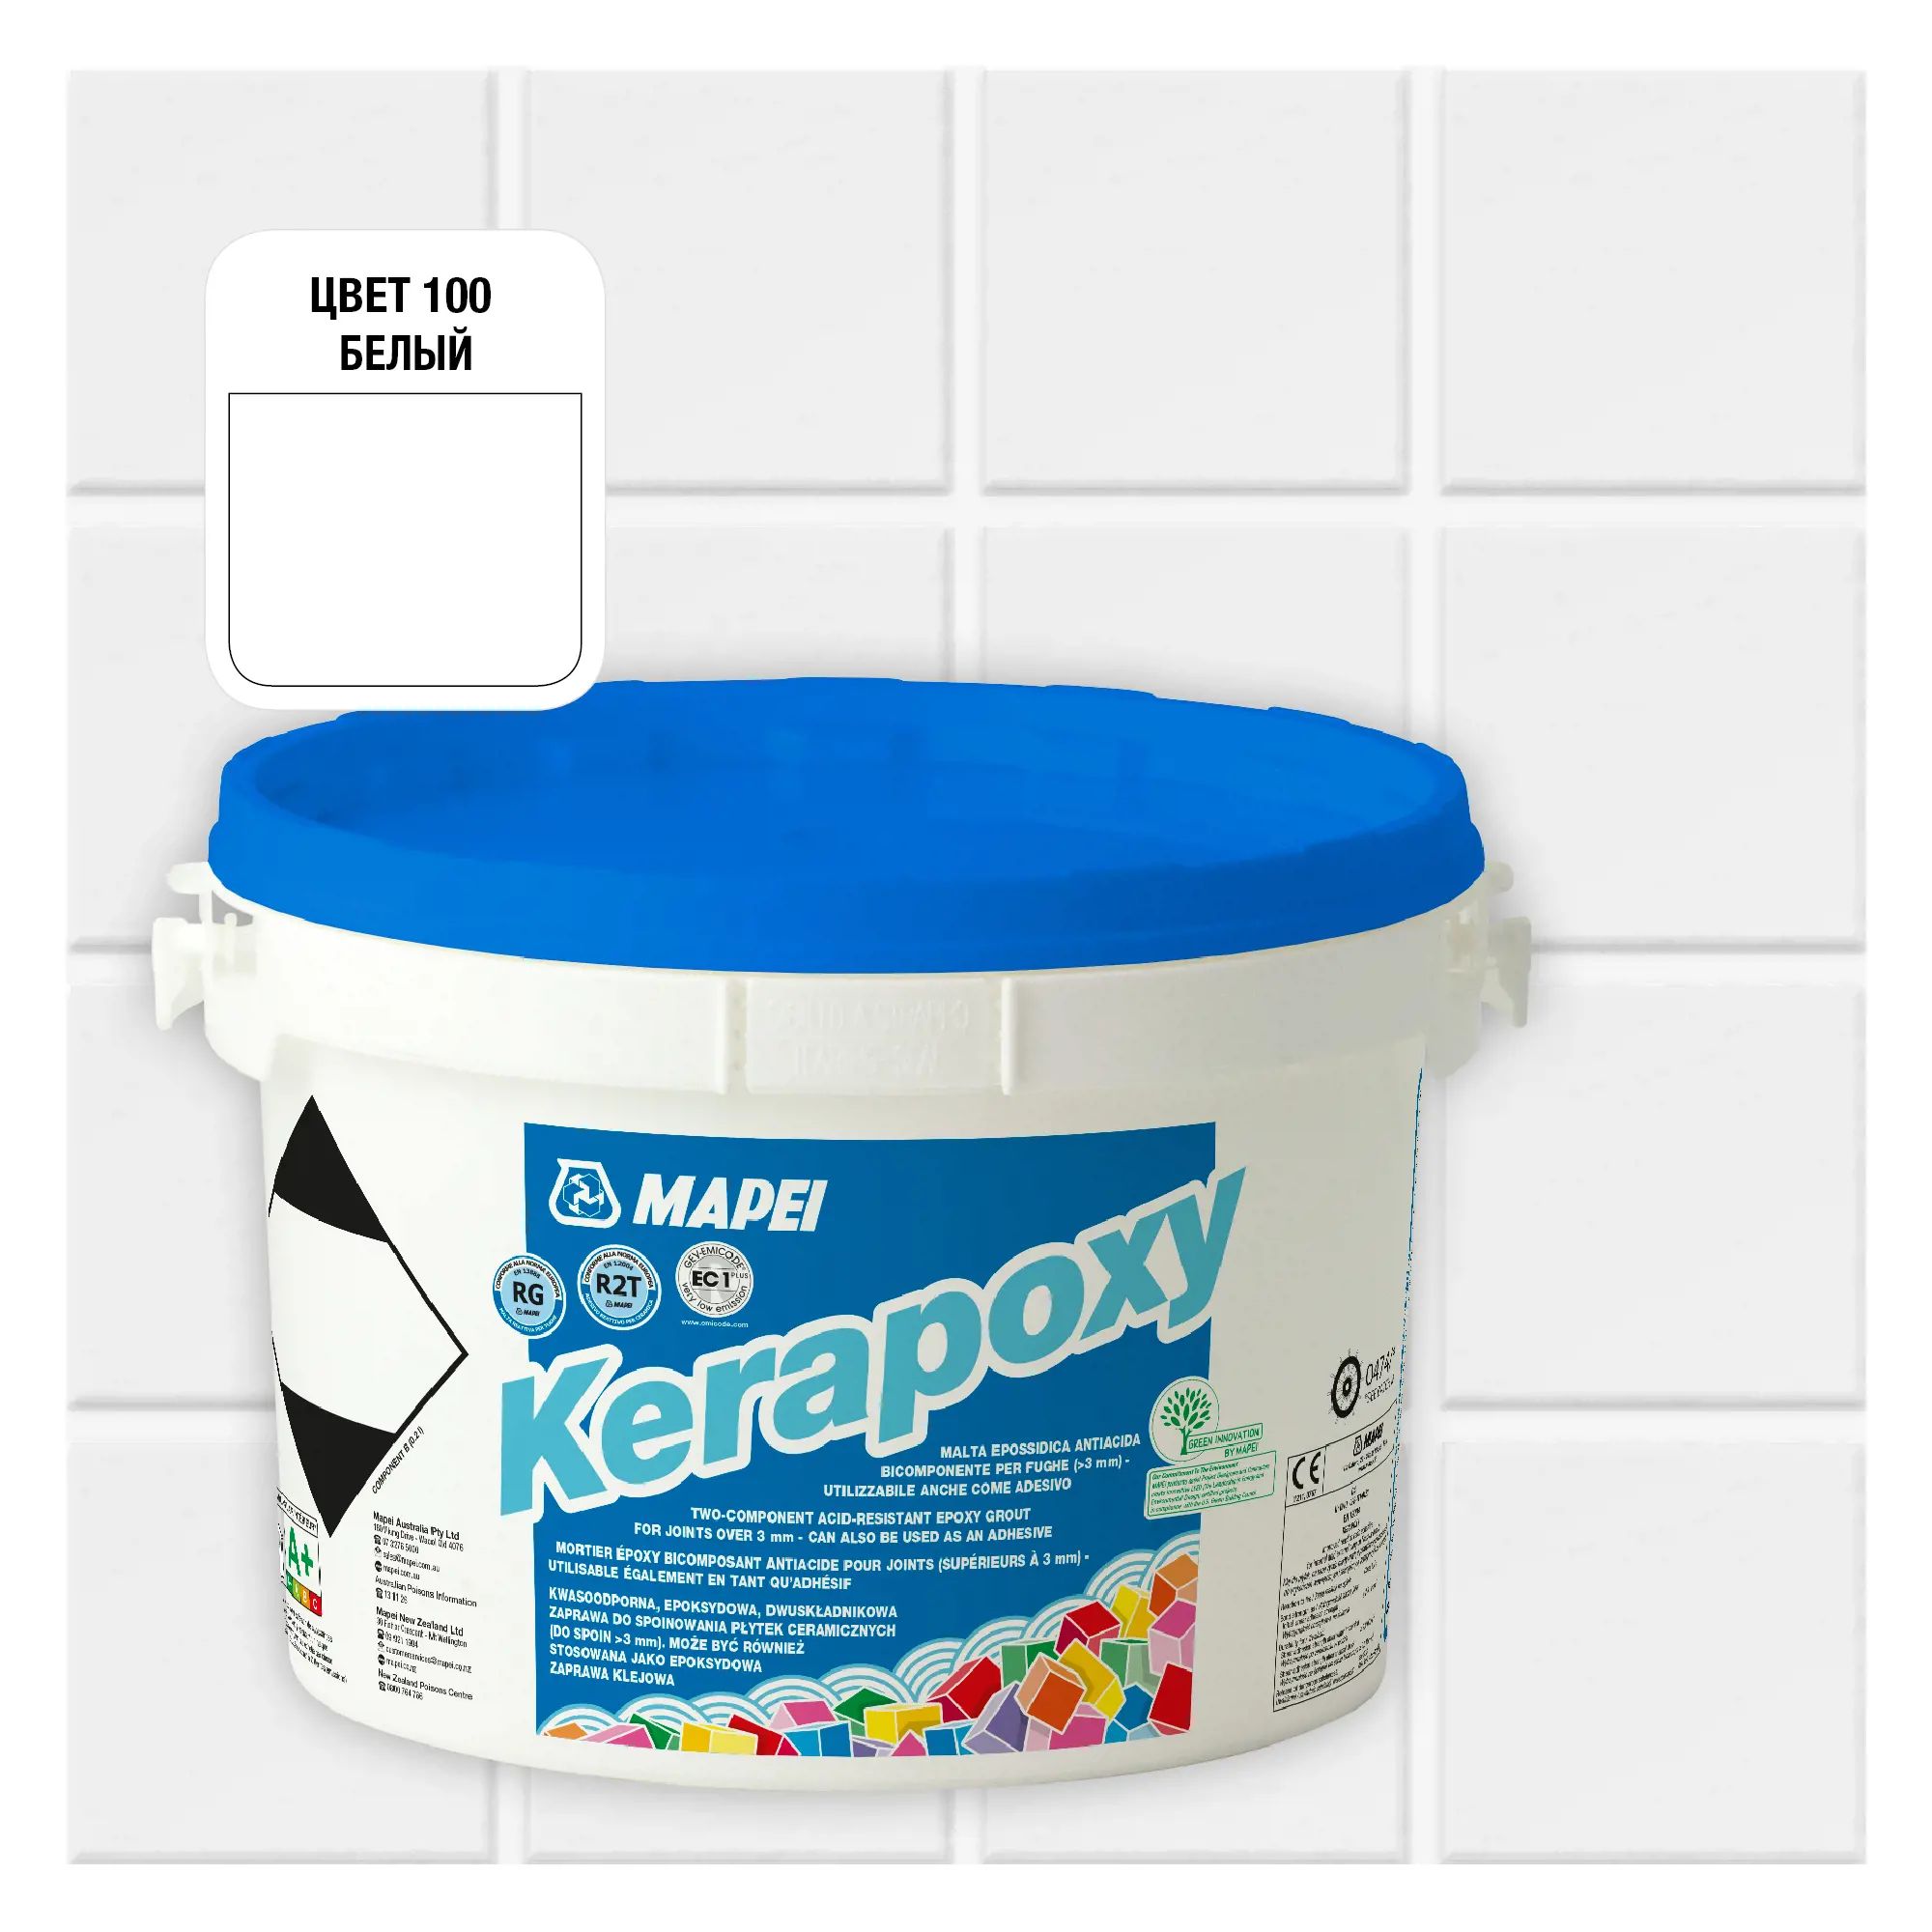 Затирка Mapei Kerapoxy 100 Белый, 2кг затирка эпоксидная mapei kerapoxy cq 114 антрацит 3 кг